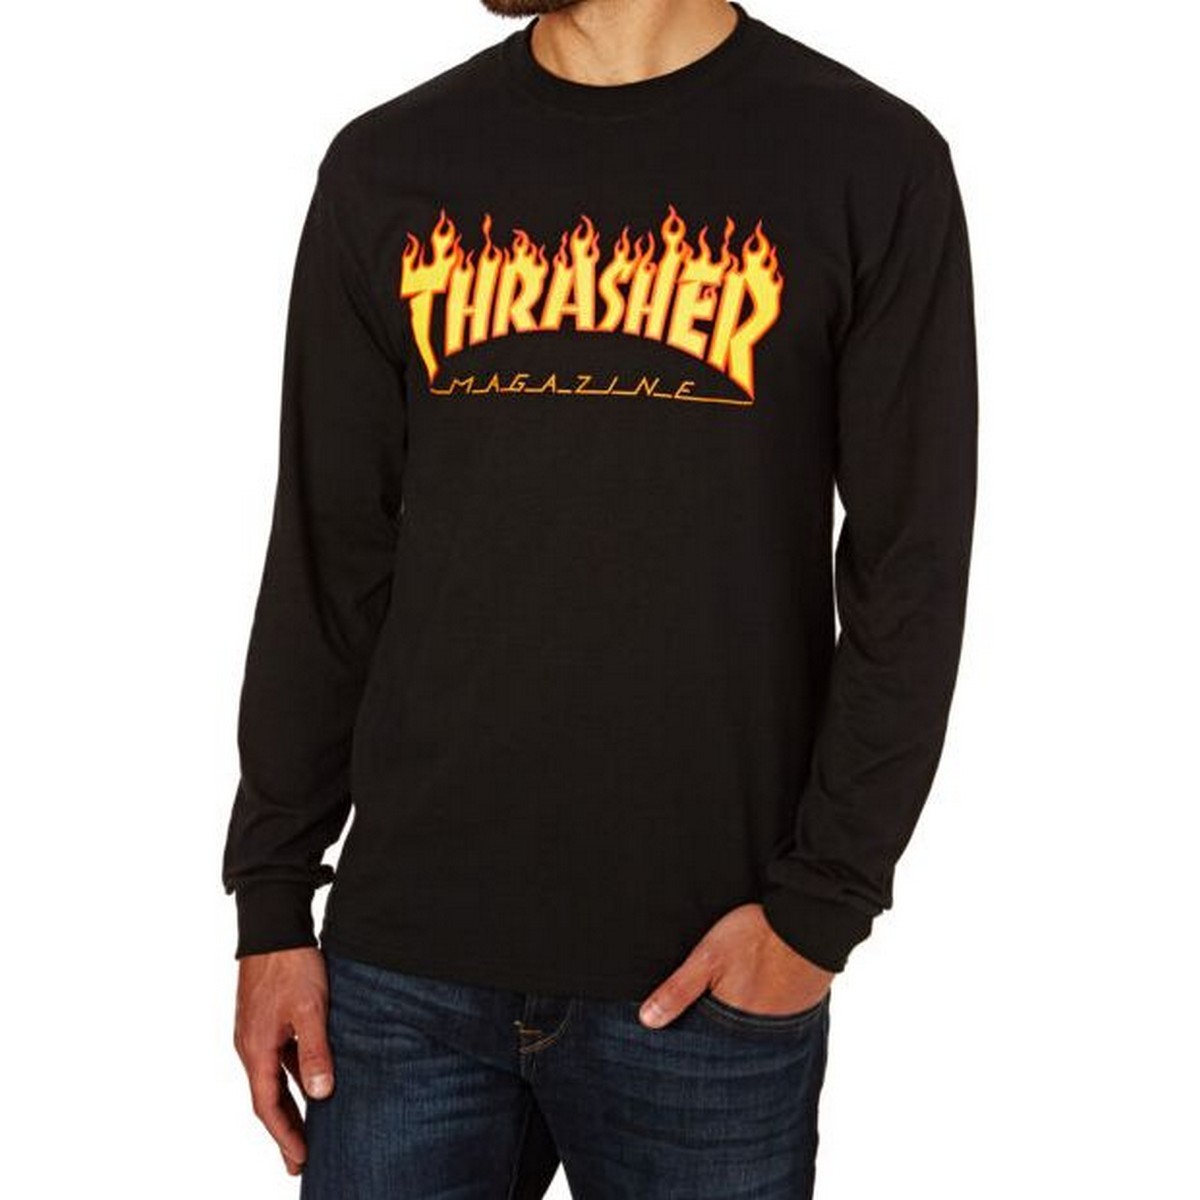 Thrasher Full Sleeves T-shirt For Men Women 150620222